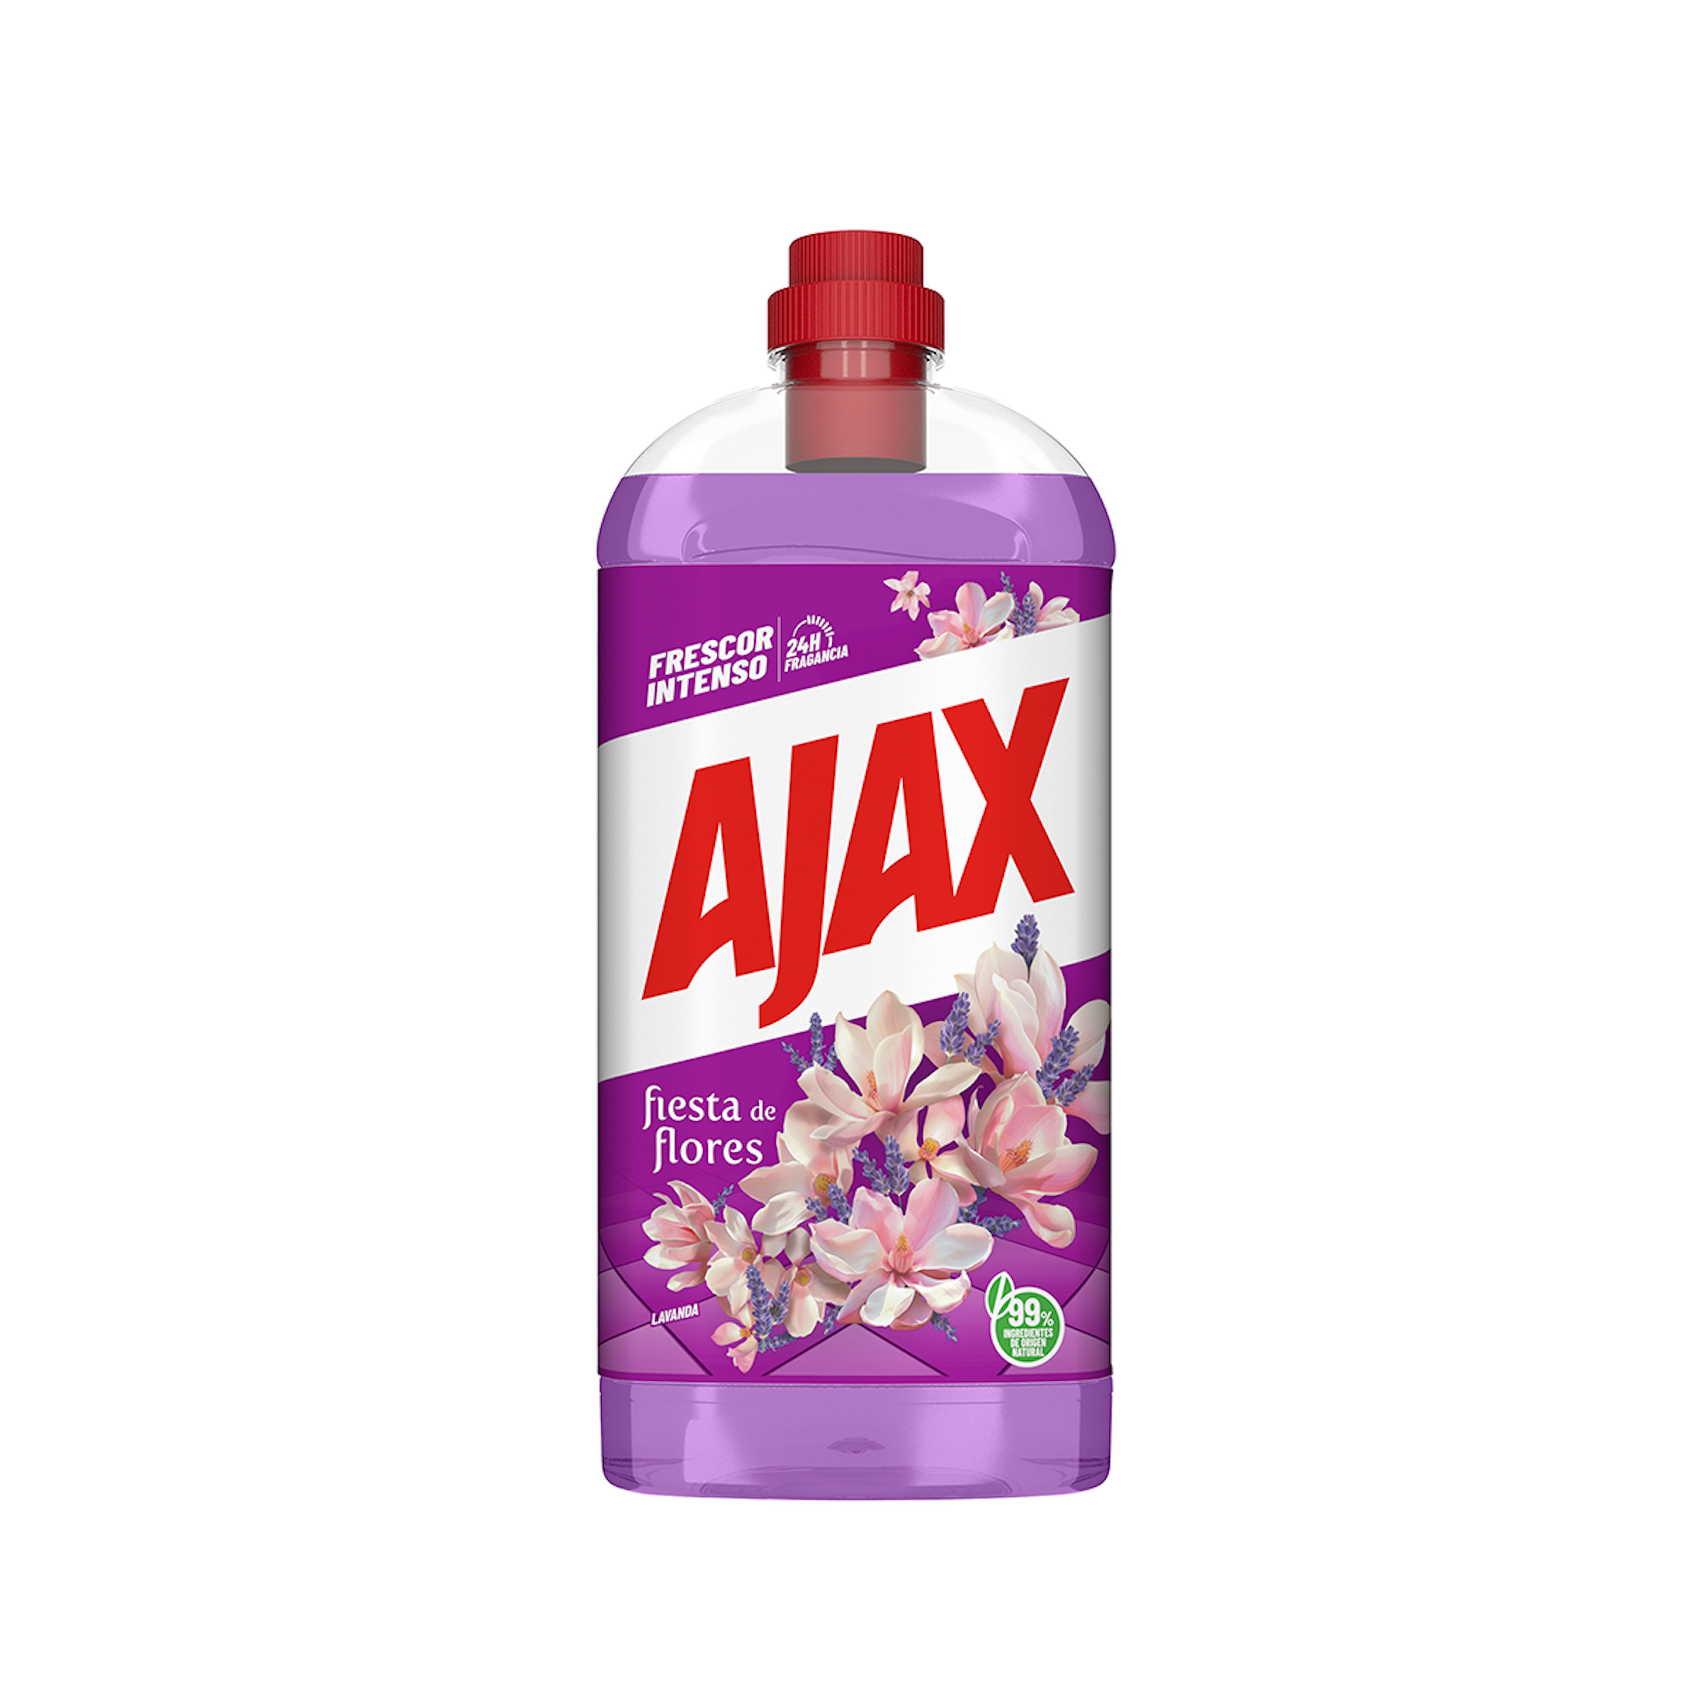 Limpiador de Hogar Ajax Fiesta de Flores Lavanda Frescor Intenso 1.25l